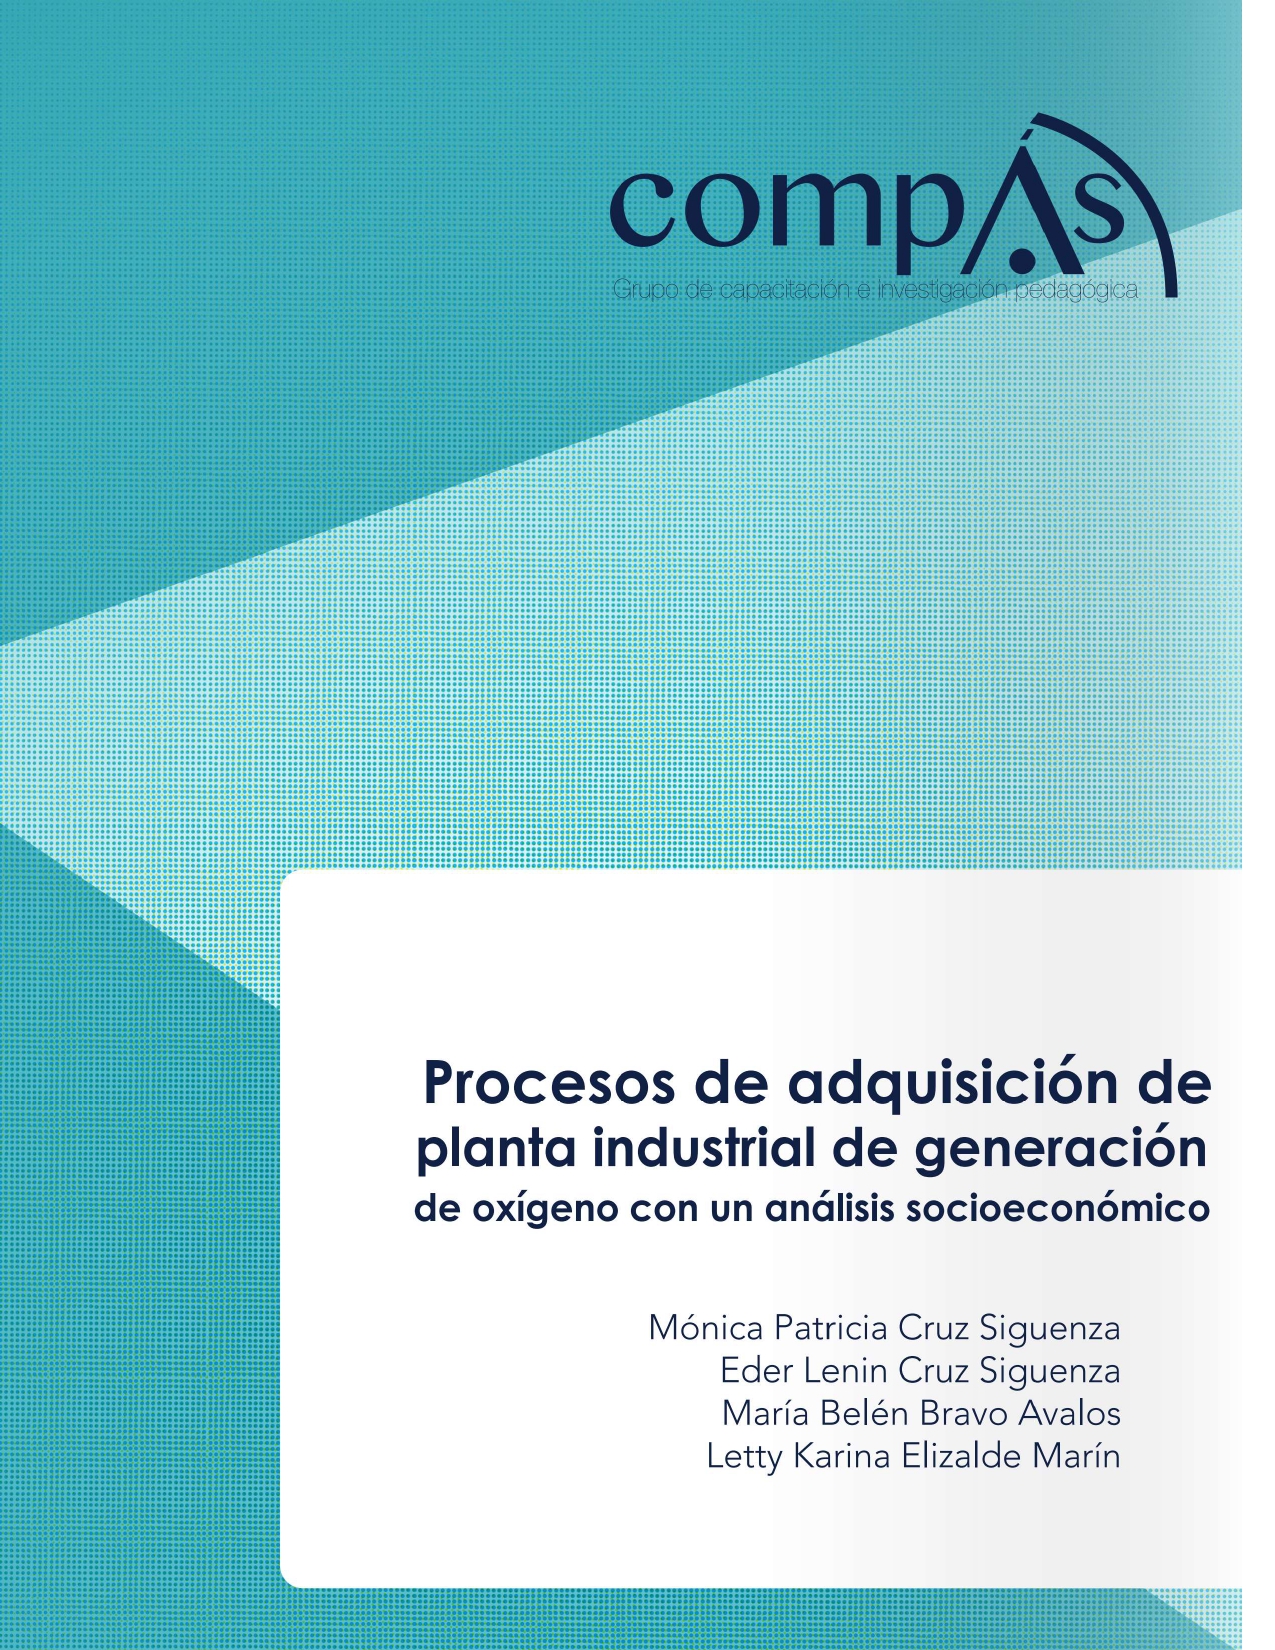 Imagen de portada del libro Procesos de adquisición de planta industrial de generación de oxígeno con un análisis socioeconómico.